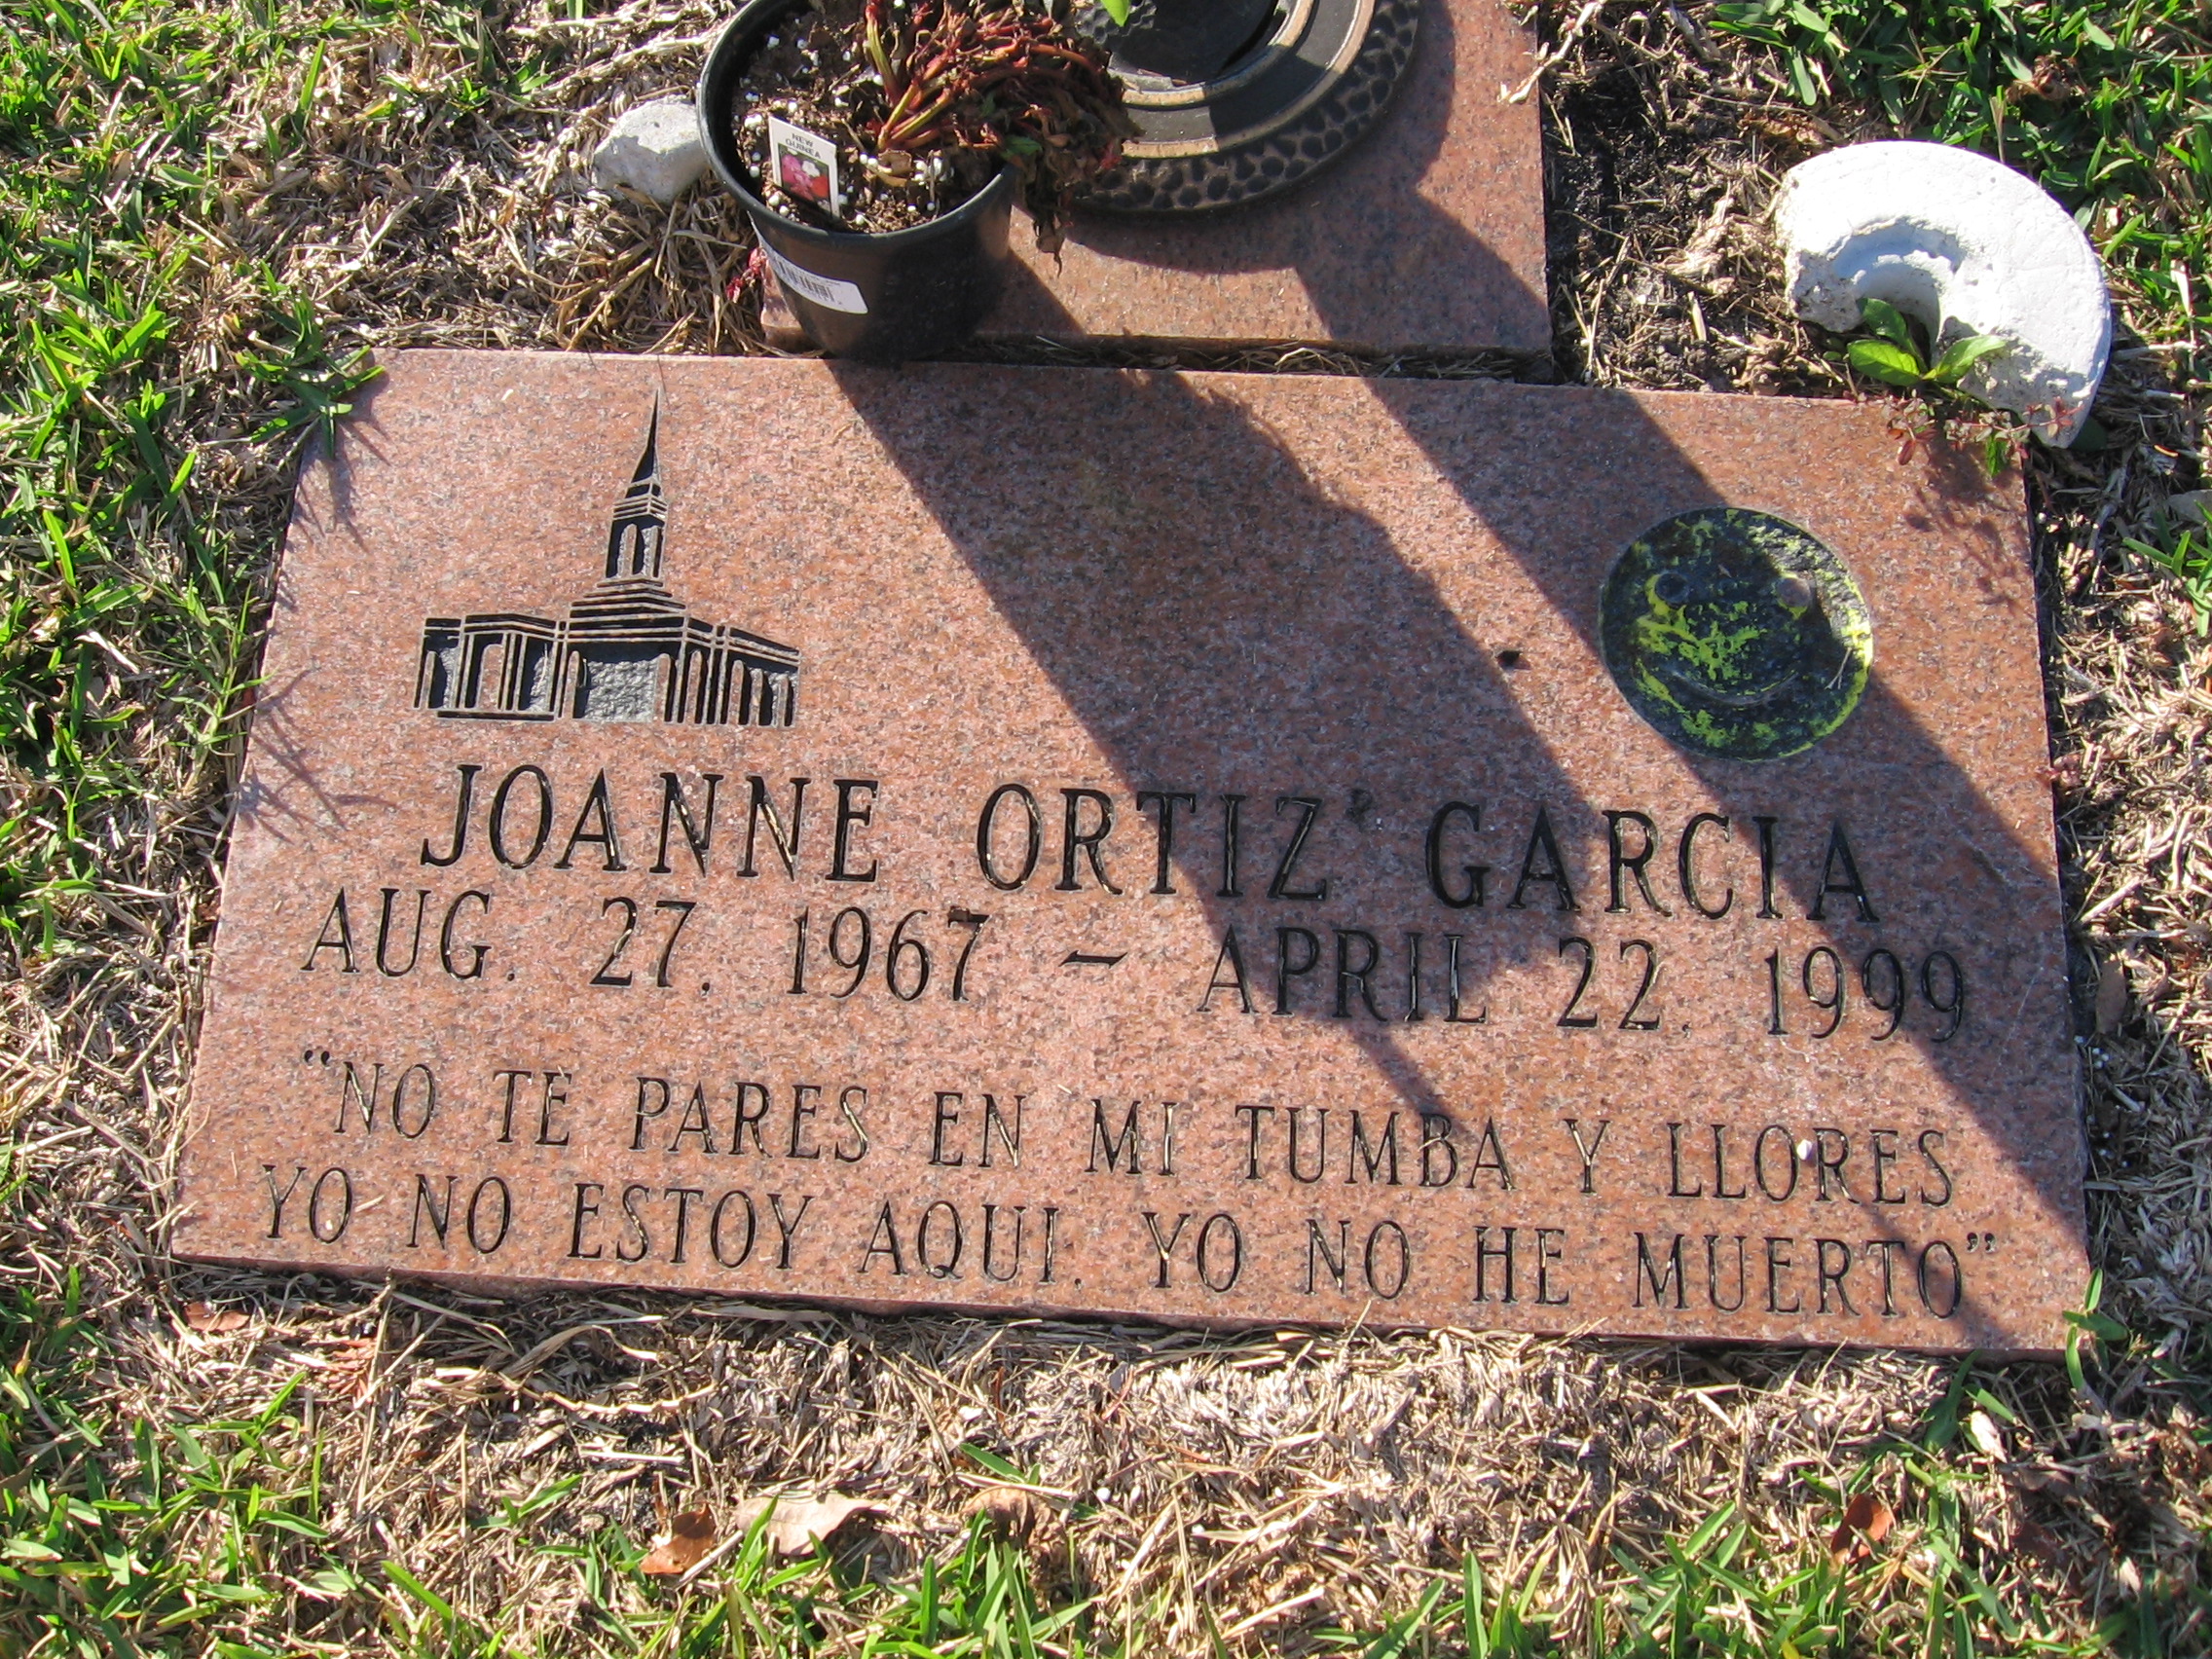 Joanne Ortiz Garcia